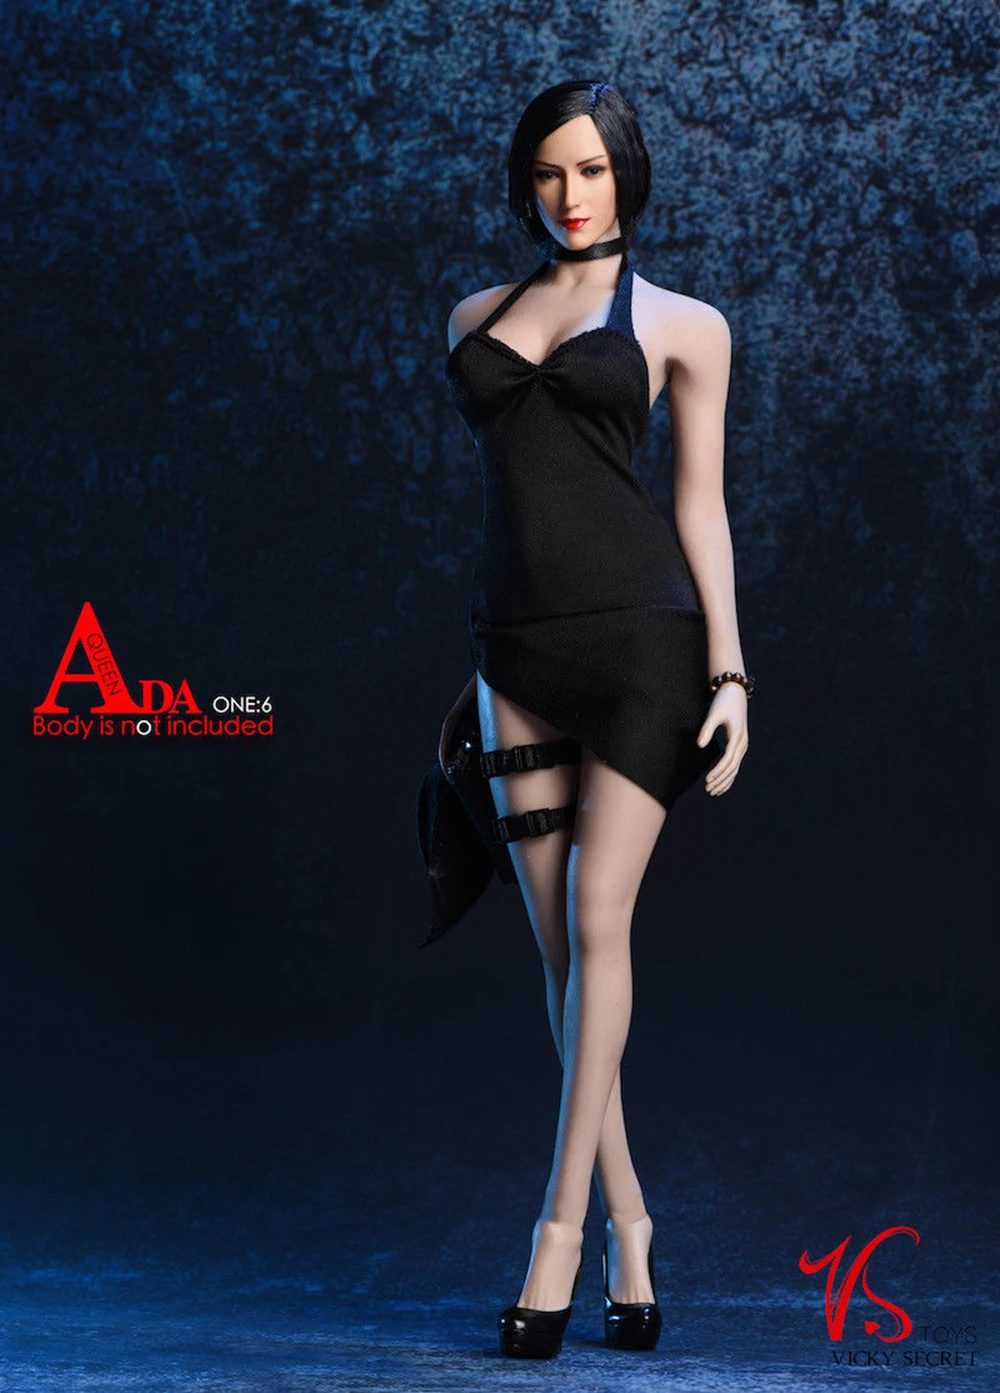 Vstoys 18XG14 1:6, сексуальное платье Ada Wong, набор, 1/6, длинная юбка с висящей шеей, черного и красного цветов для большой груди